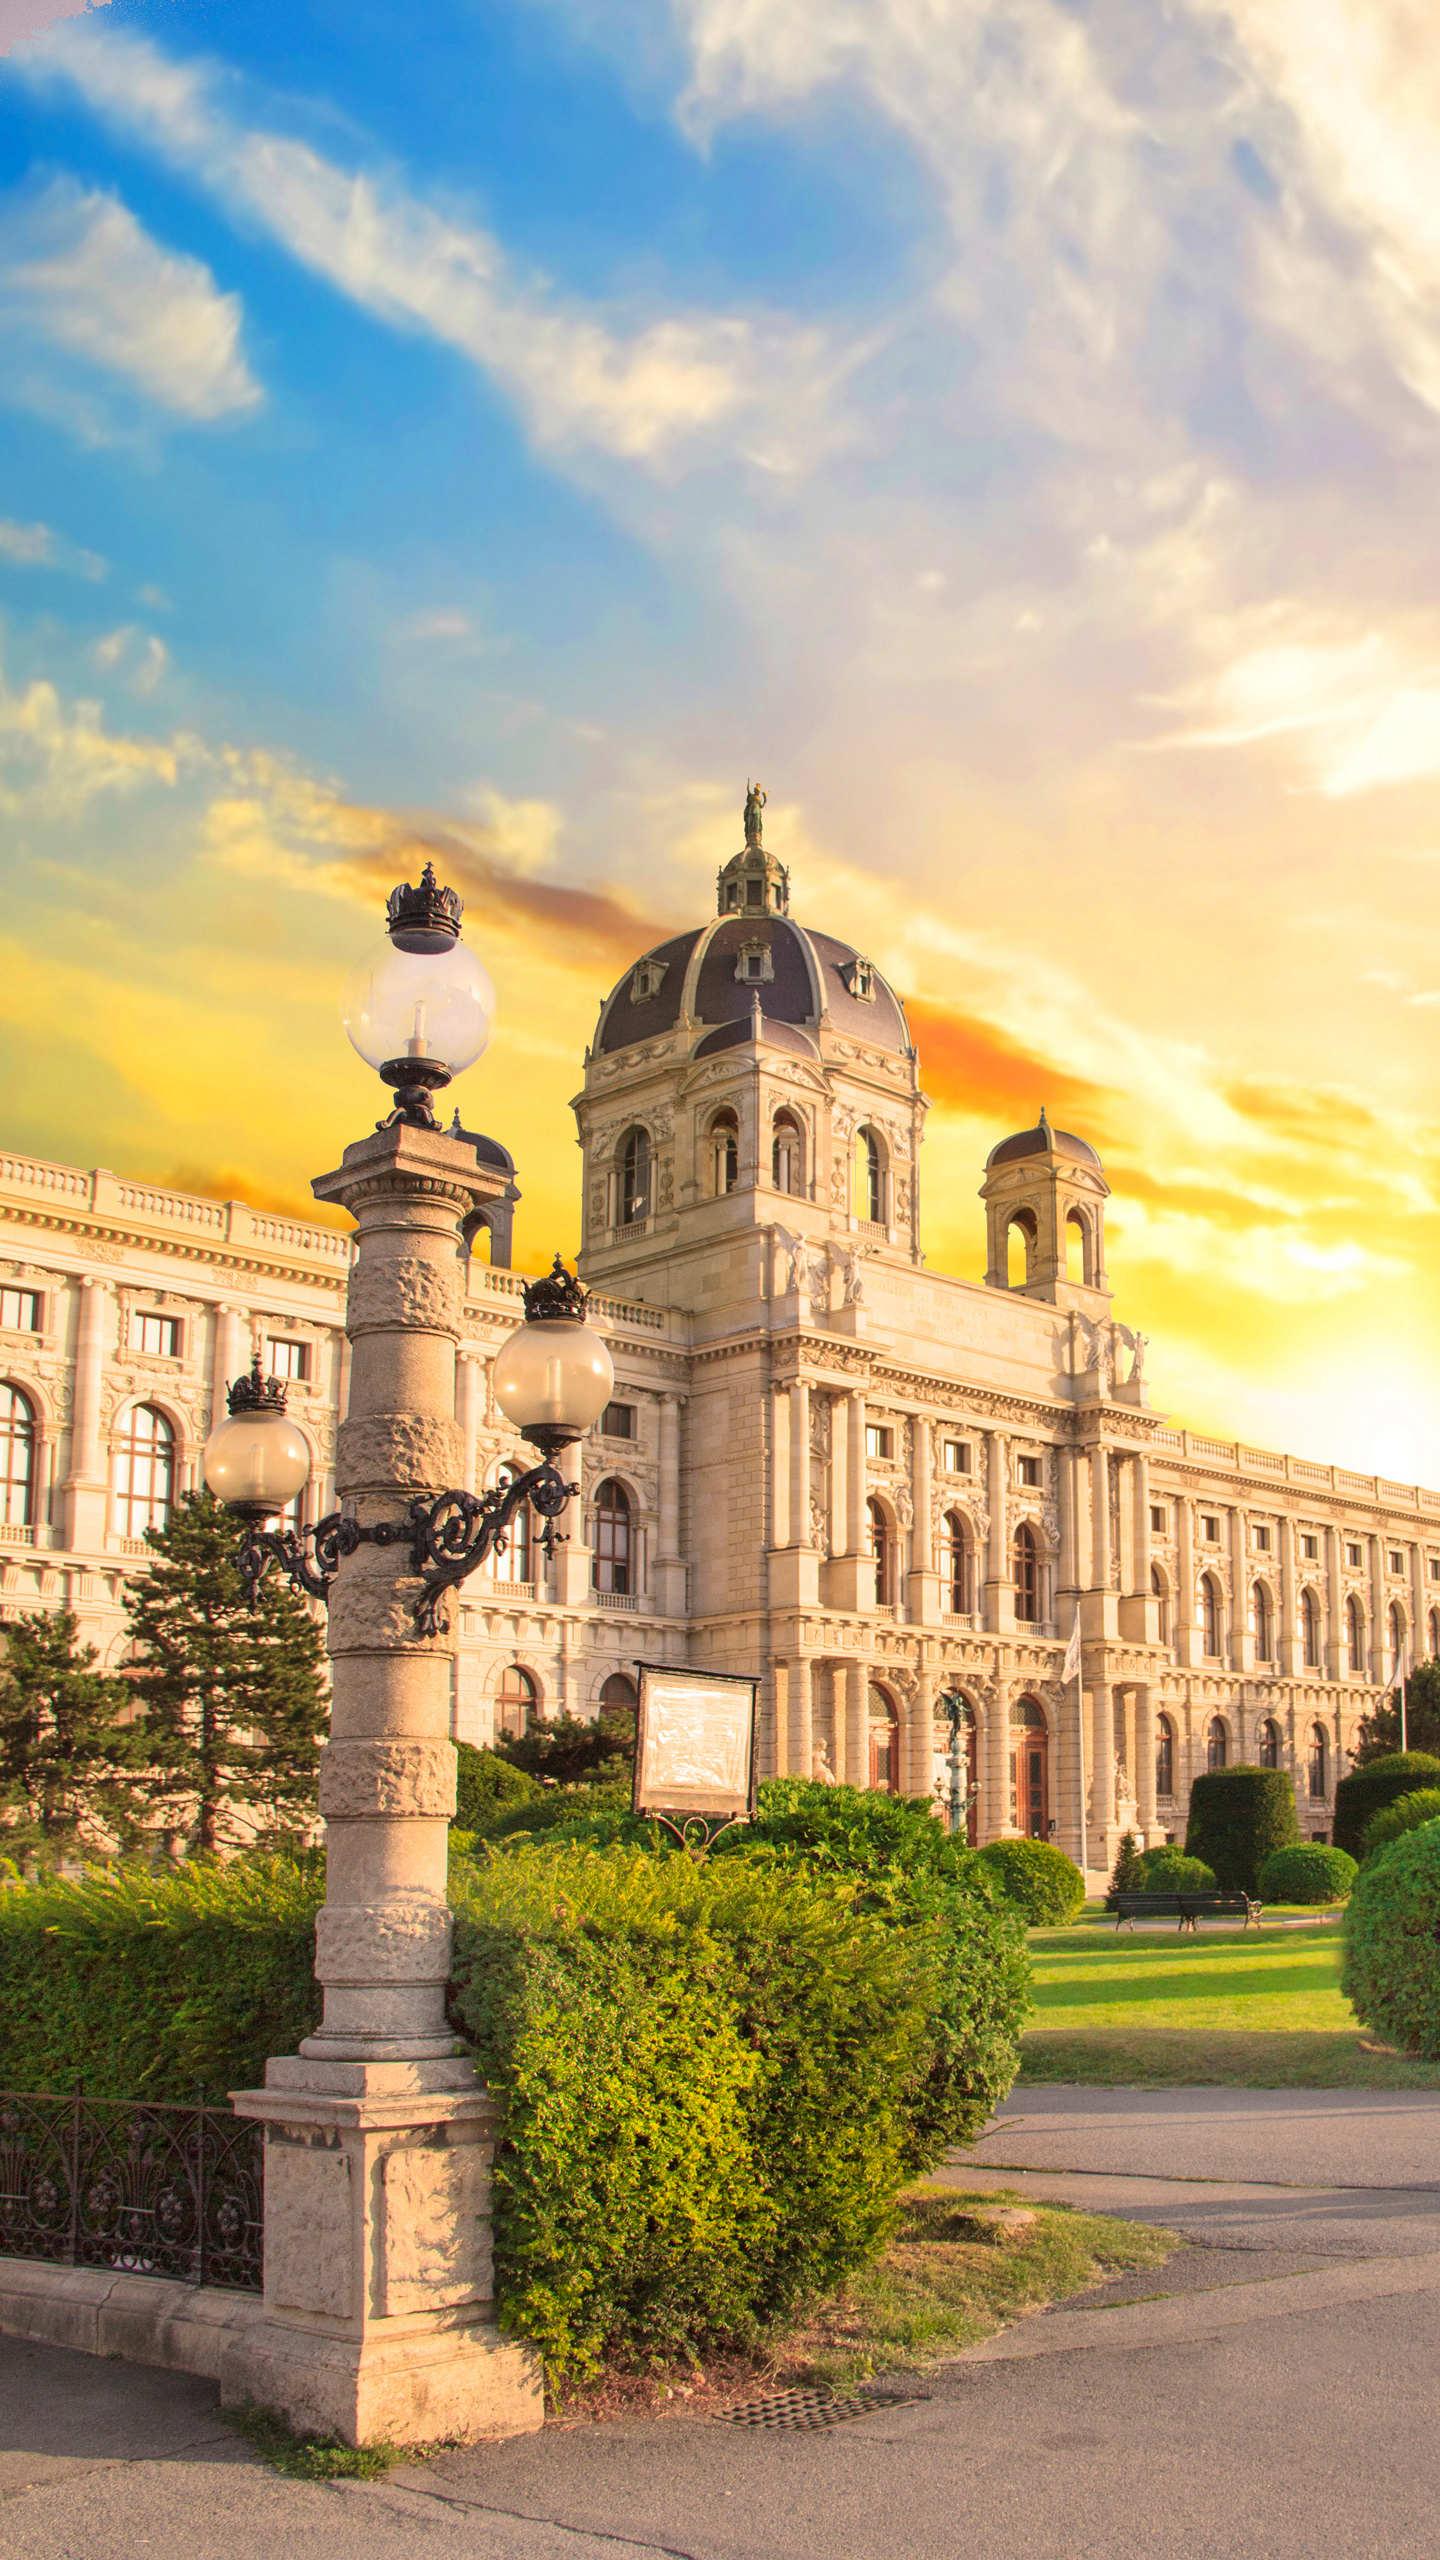 维也纳艺术史博物馆具有文艺复兴时期的壮丽外观,珍藏着哈布斯堡王朝